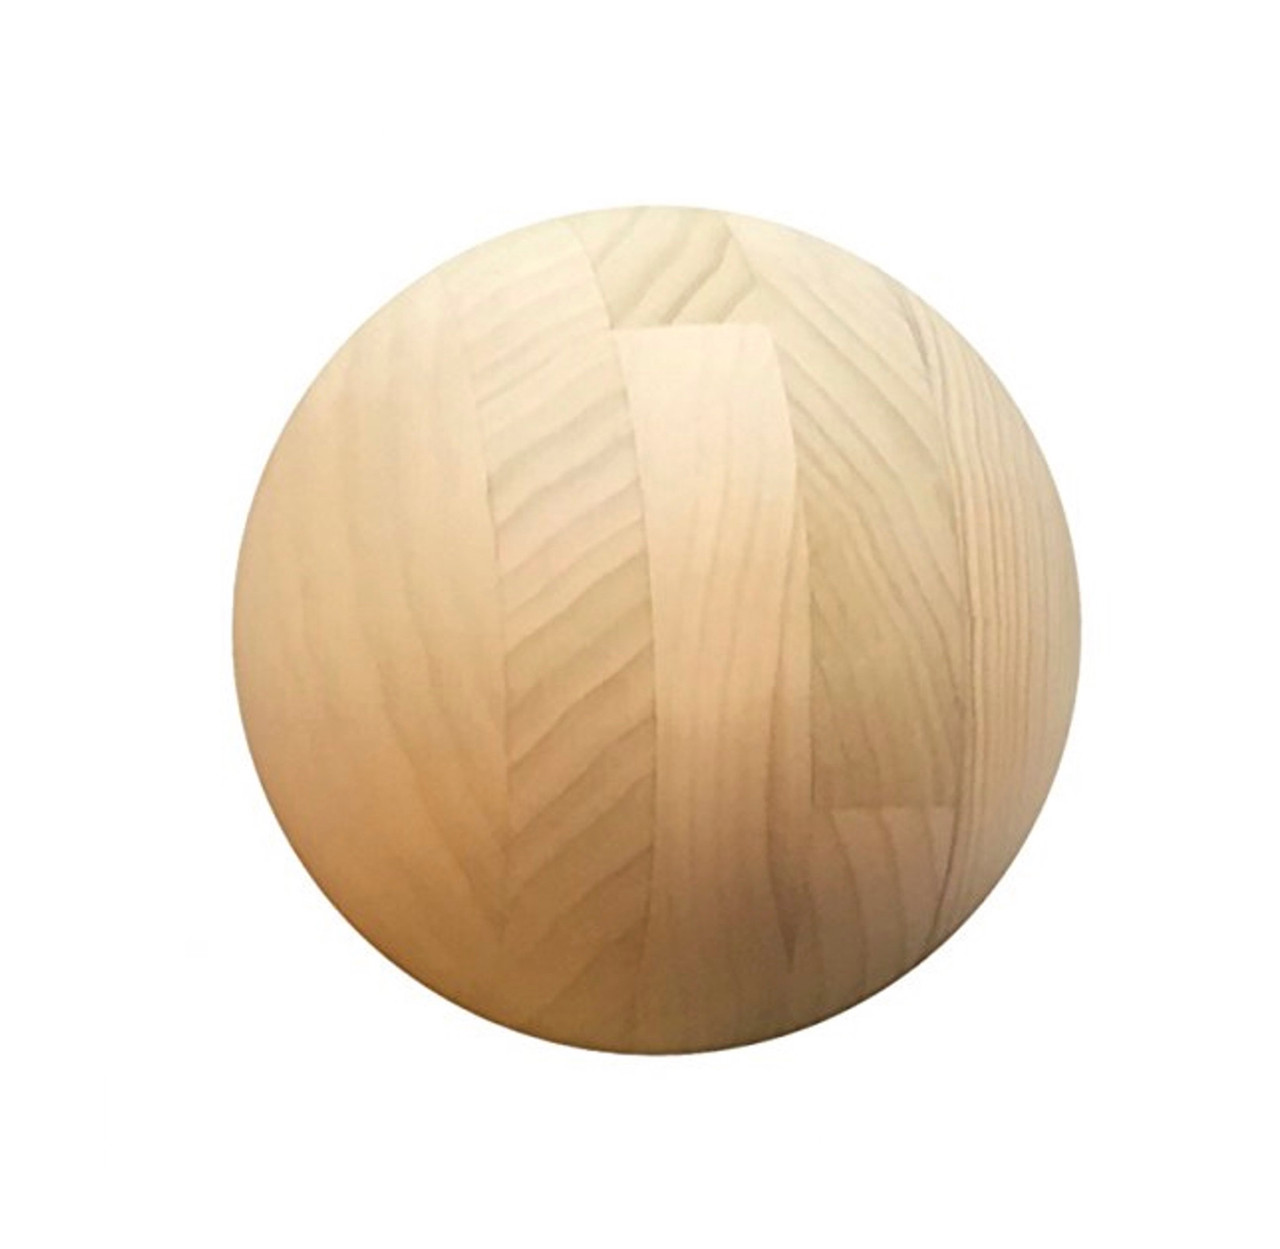 Wooden Sphere 5".